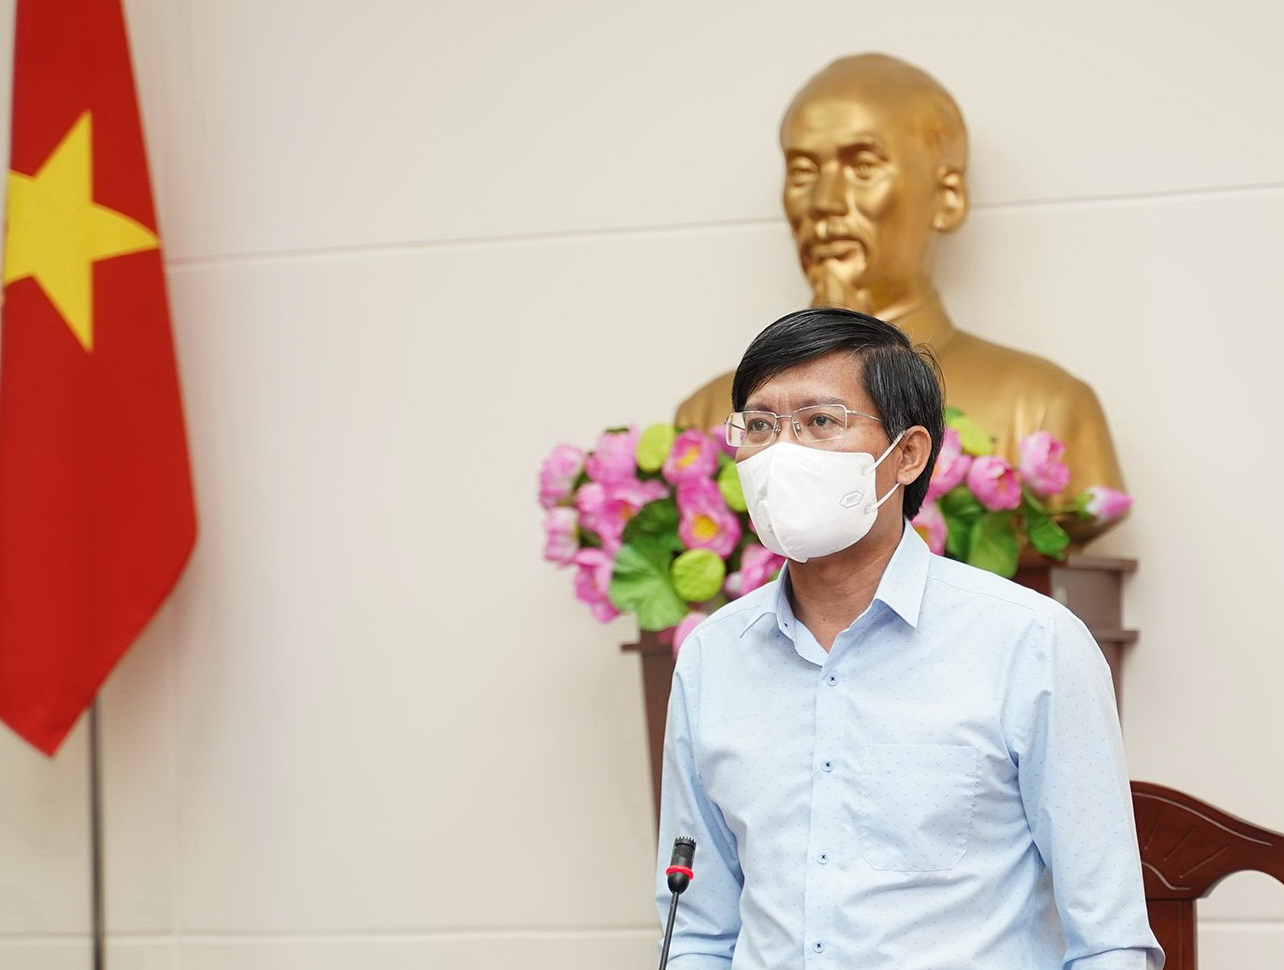 Bình Thuận: Ca mắc Covid-19 gia tăng sau một thời gian thực hiện Nghị quyết 128 của Chính phủ và Quyết định 2780 của tỉnh - Ảnh 1.